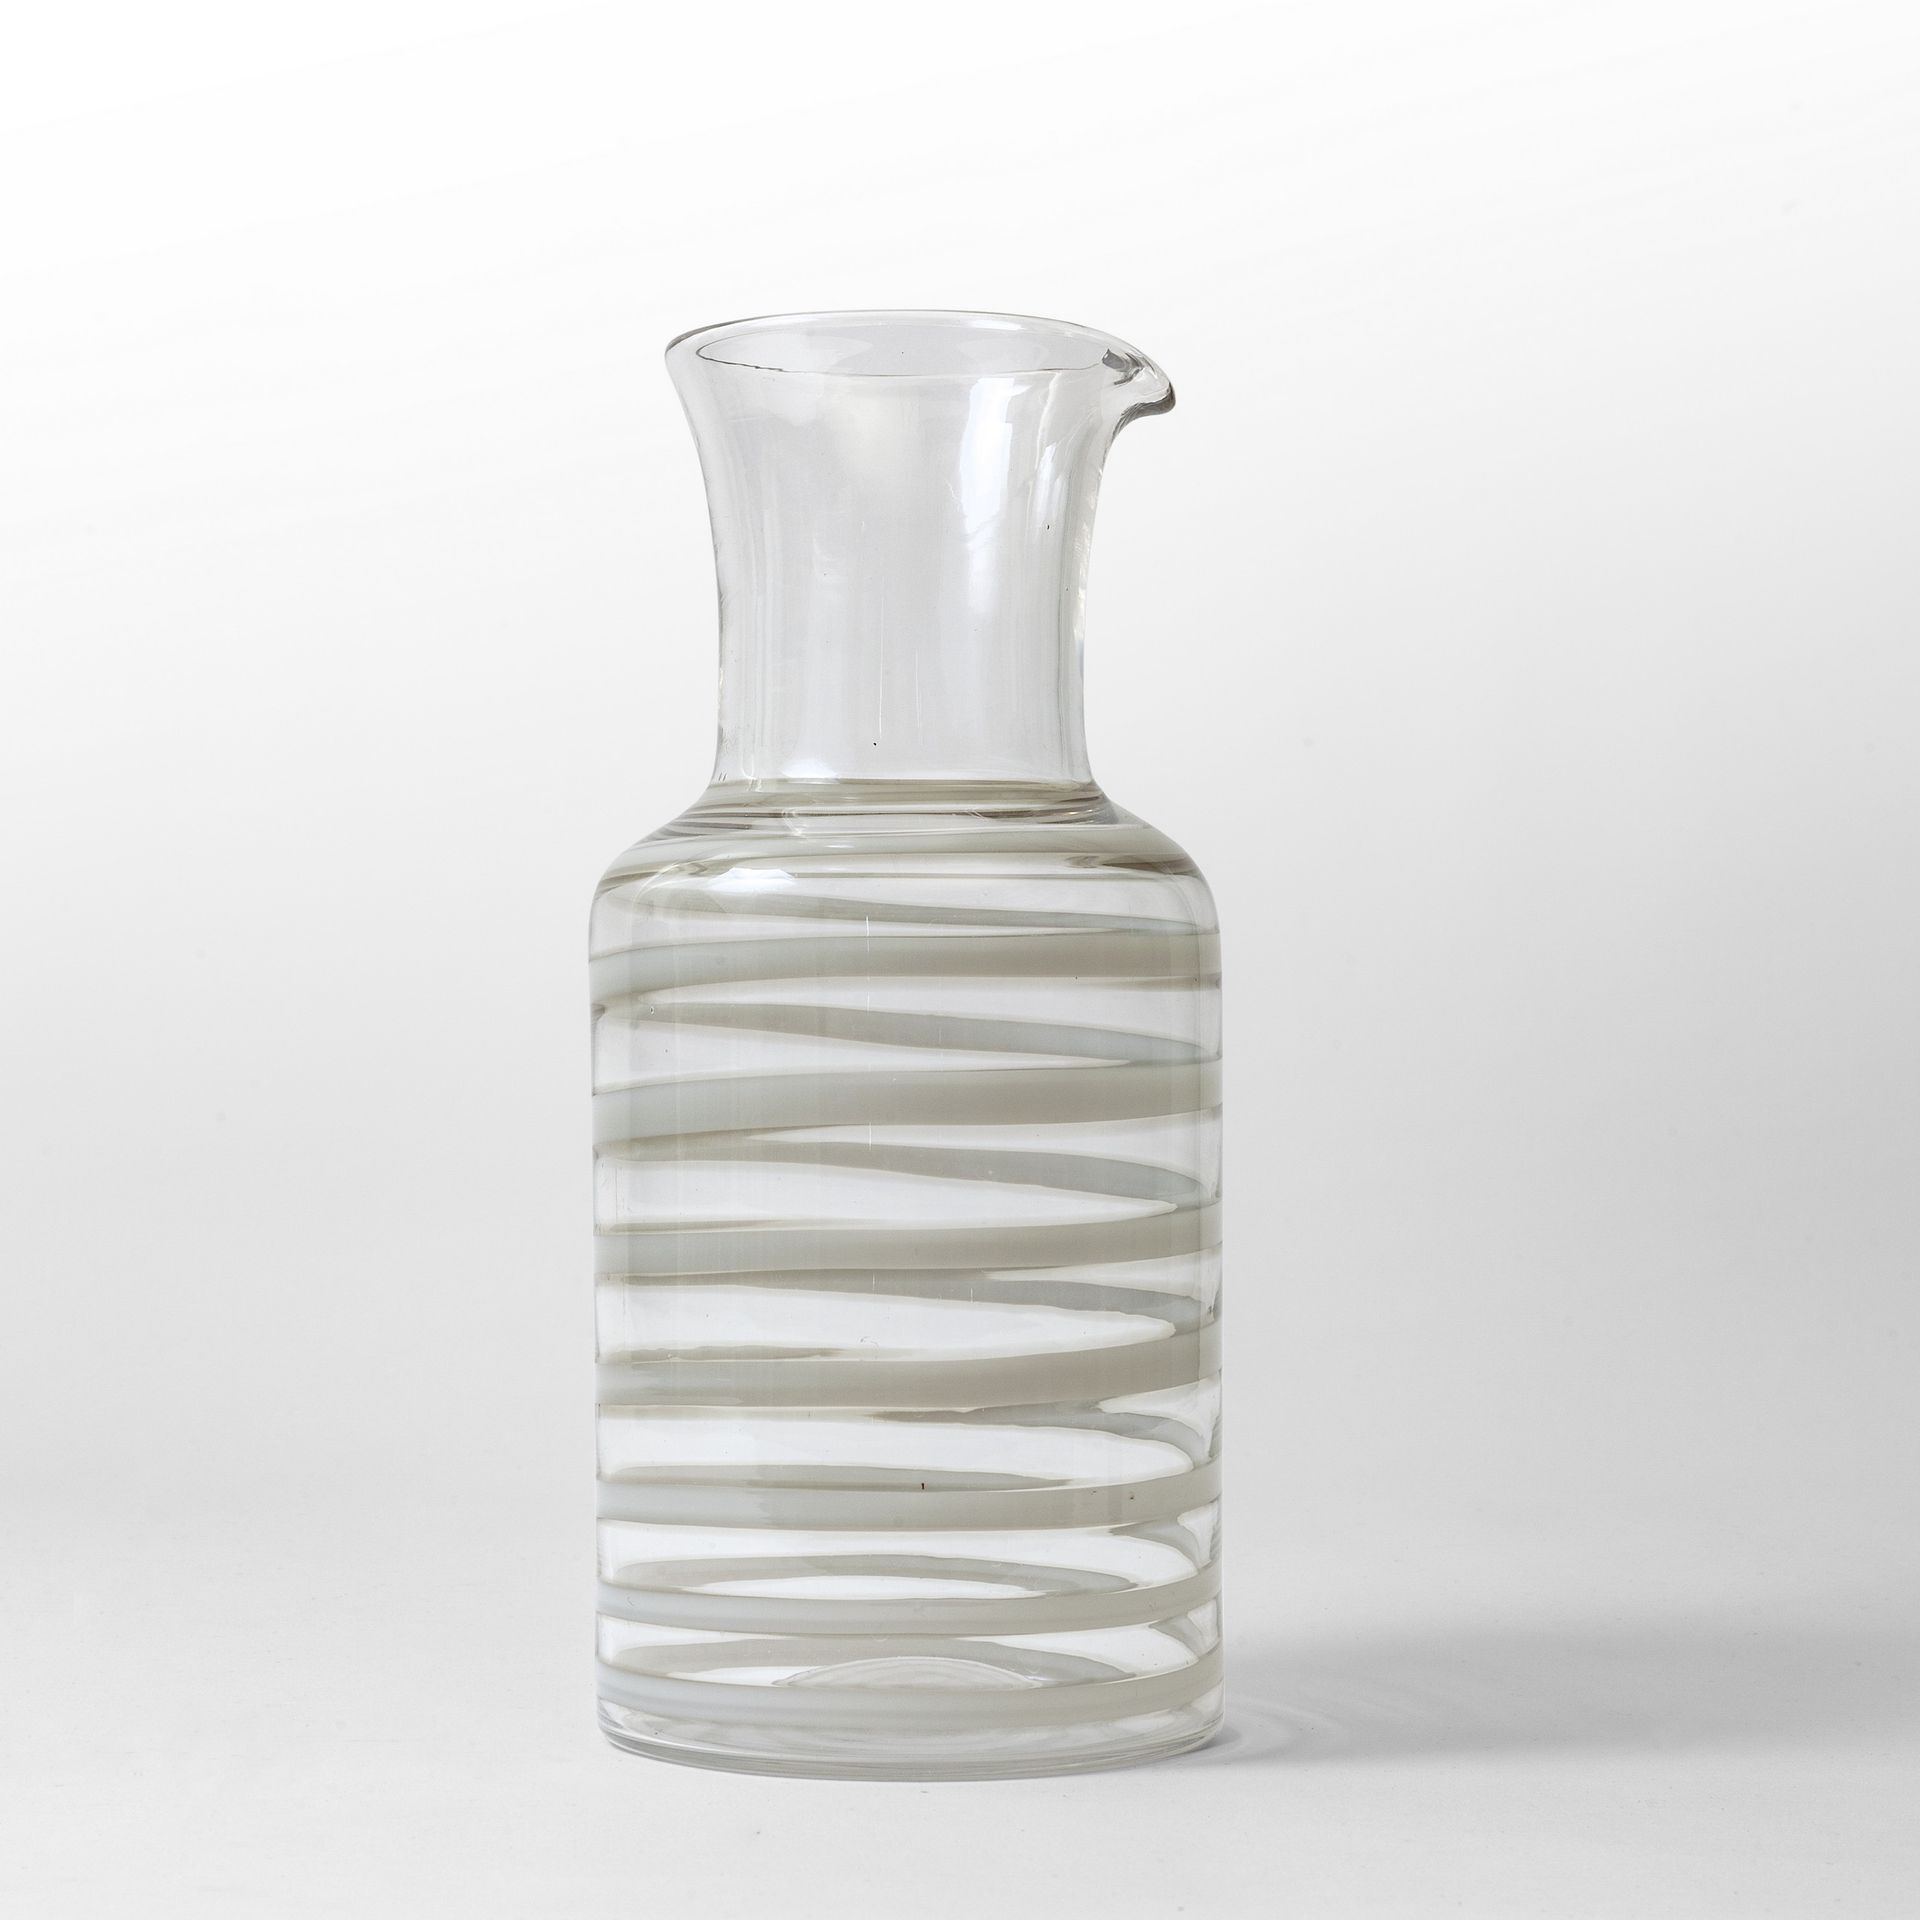 SCARPA Carlo CARLO SCARPA VENINI
Eine transparente Glaskaraffe mit einem spiralf&hellip;